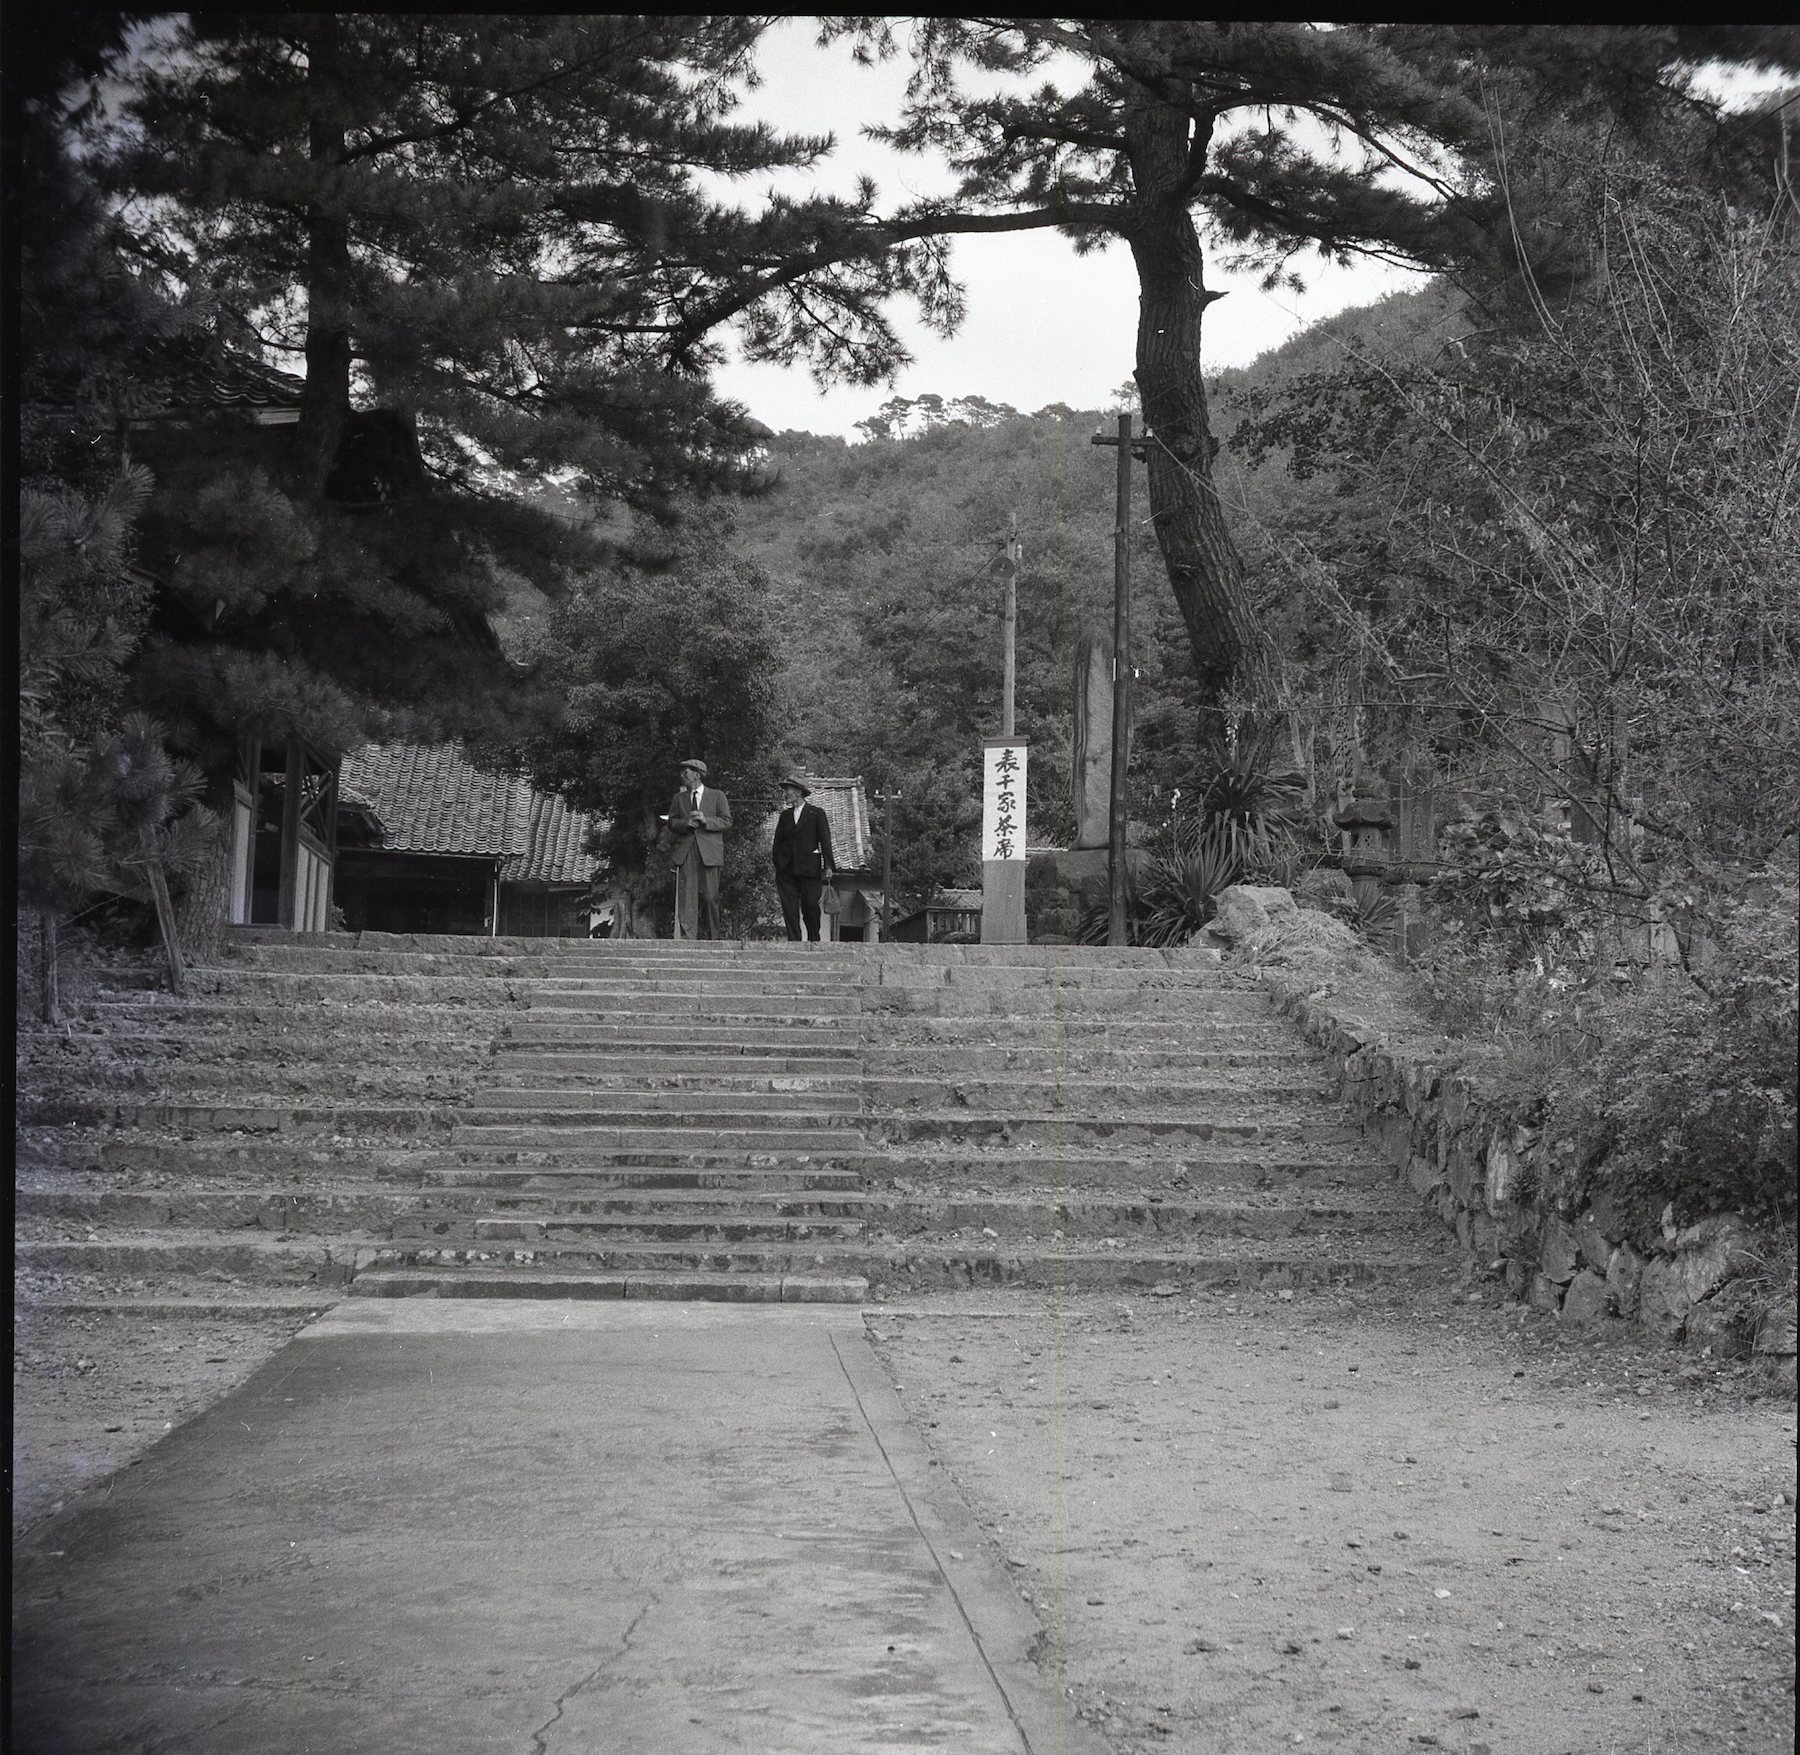 芳心寺の境内's image 1